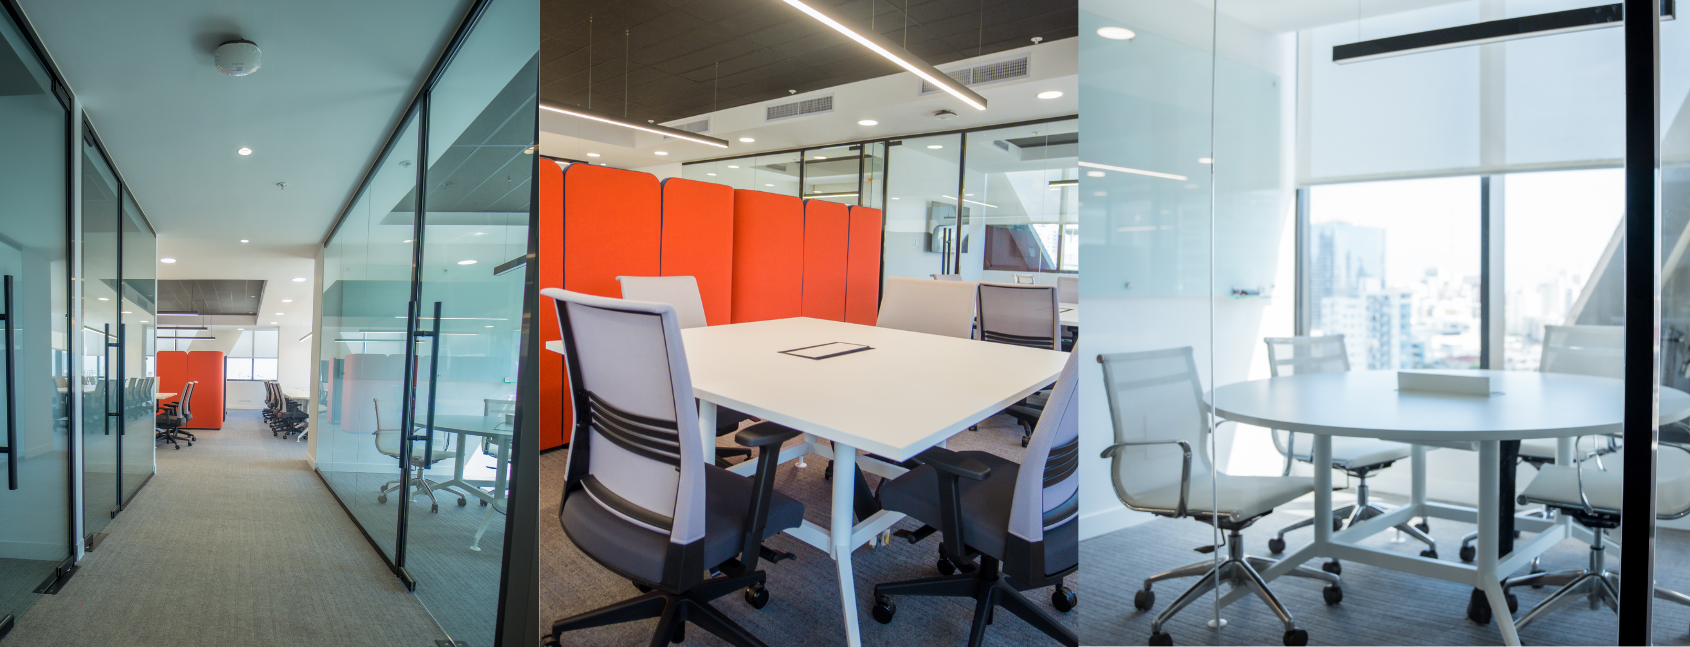 Inauguramos nosso novo modelo de escritório, um espaço para a criatividade, a influência e a inovação.